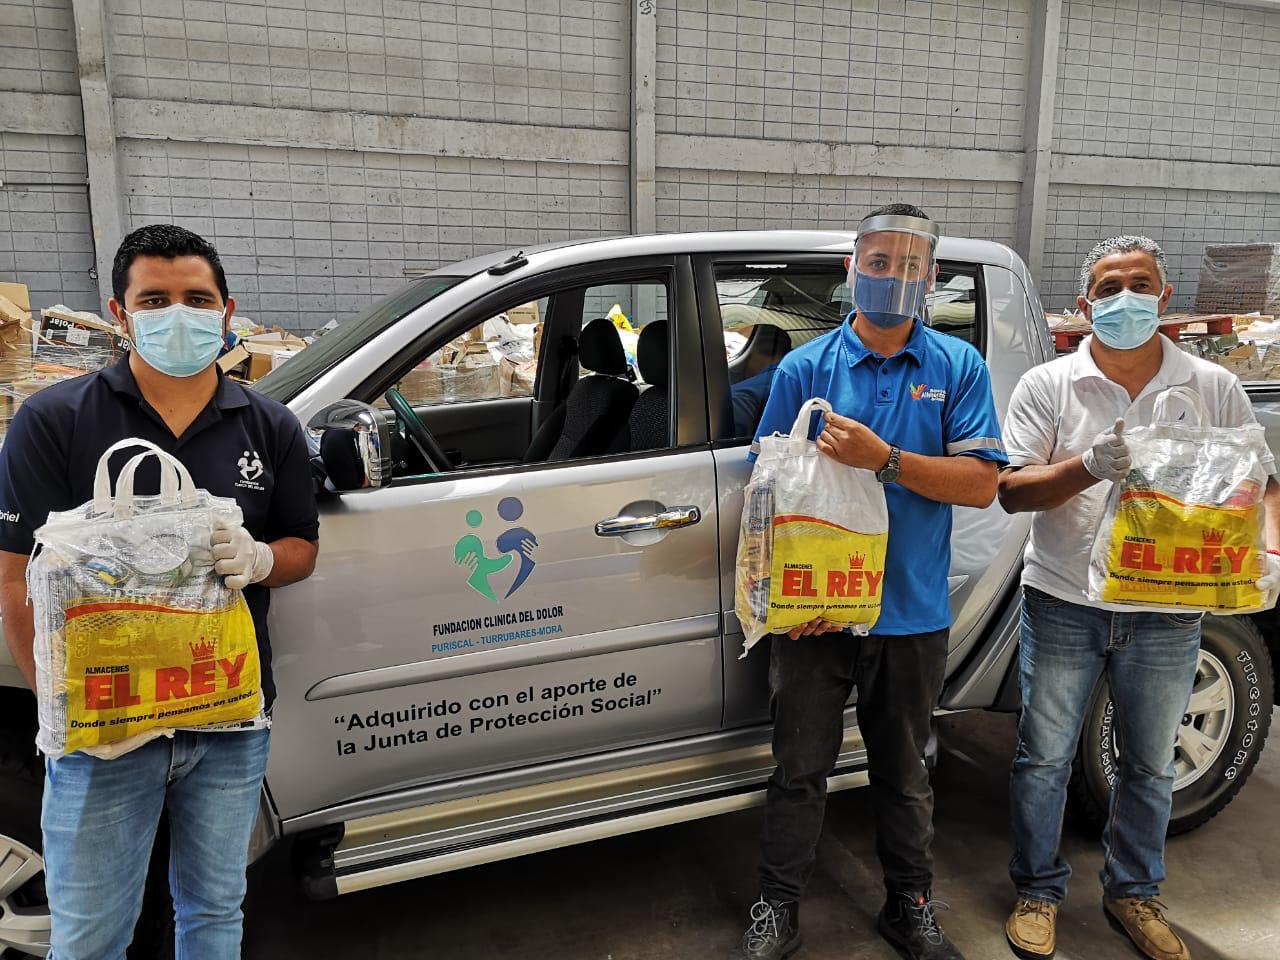 Almacenes El Rey y Banco de Alimentos de Costa Rica donan 100 sacos de esperanza a familias en vulnerabilidad afectadas por la COVID-19